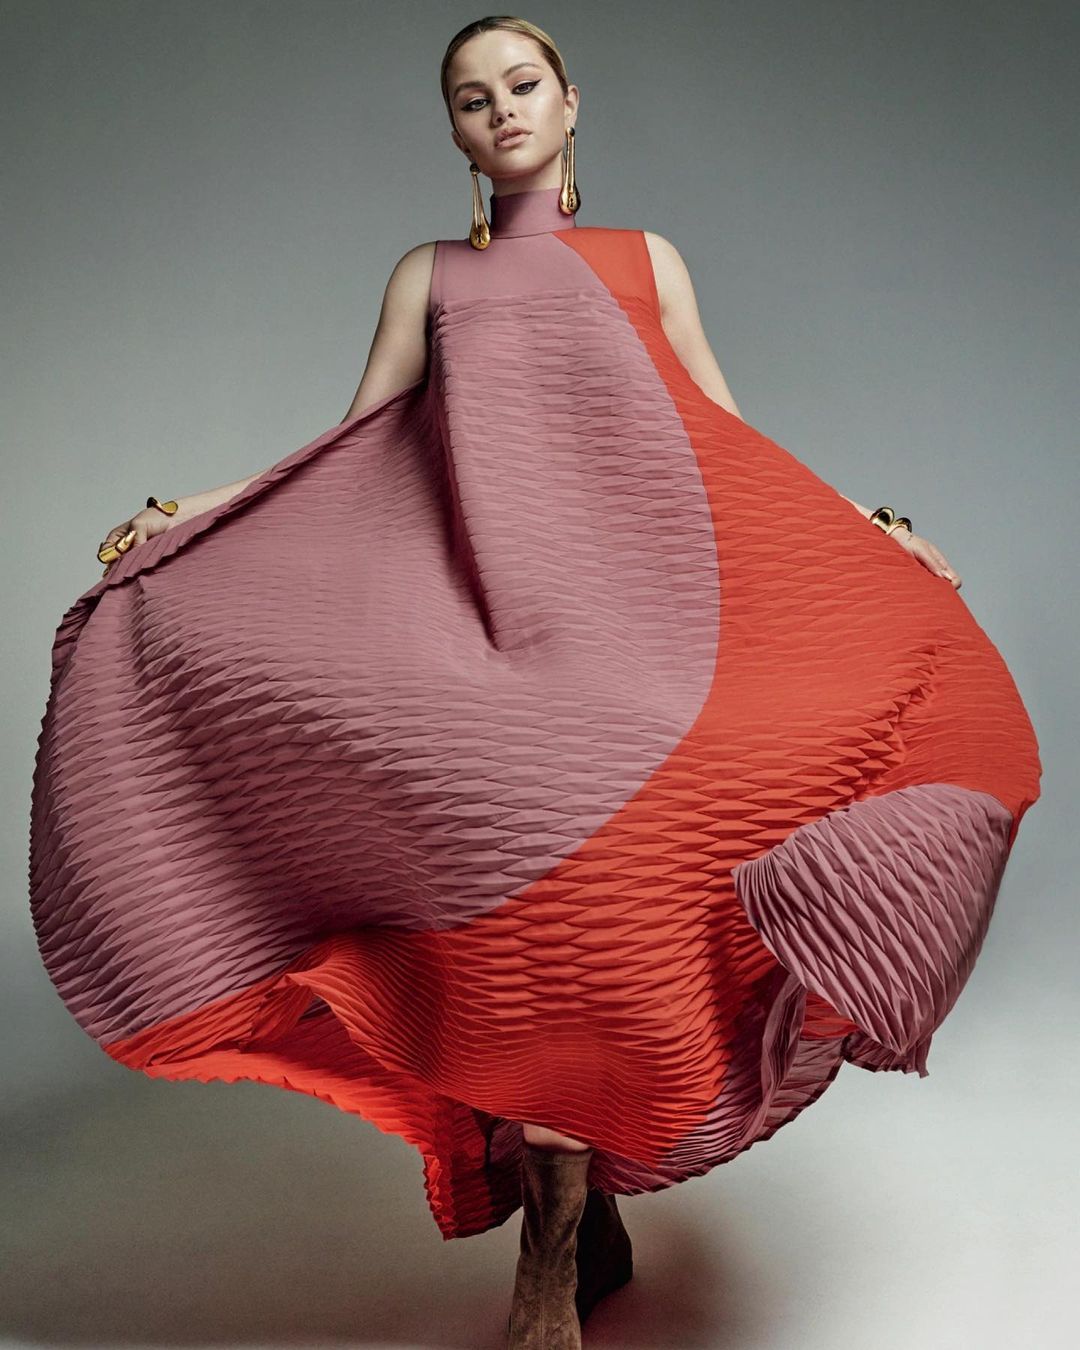 Stunning Fashionista In Baloonie Dress